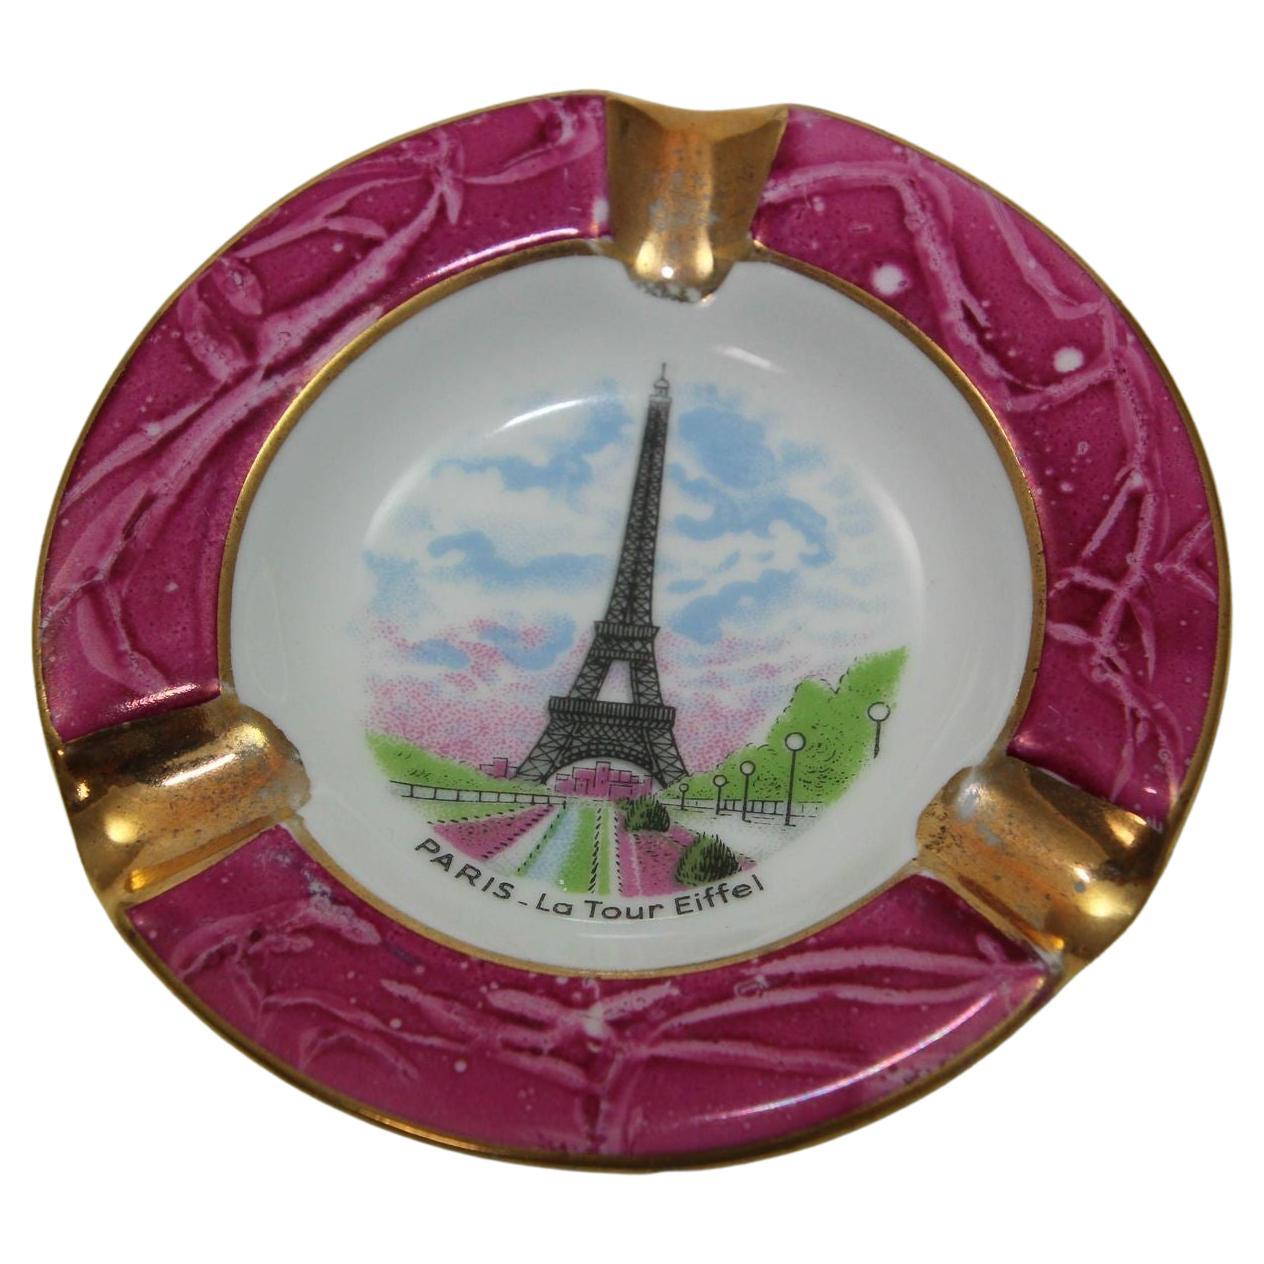 Limoges Porcelain Dish Ashtray Paris La Tour Eiffel Hand-Painted France 1960s For Sale